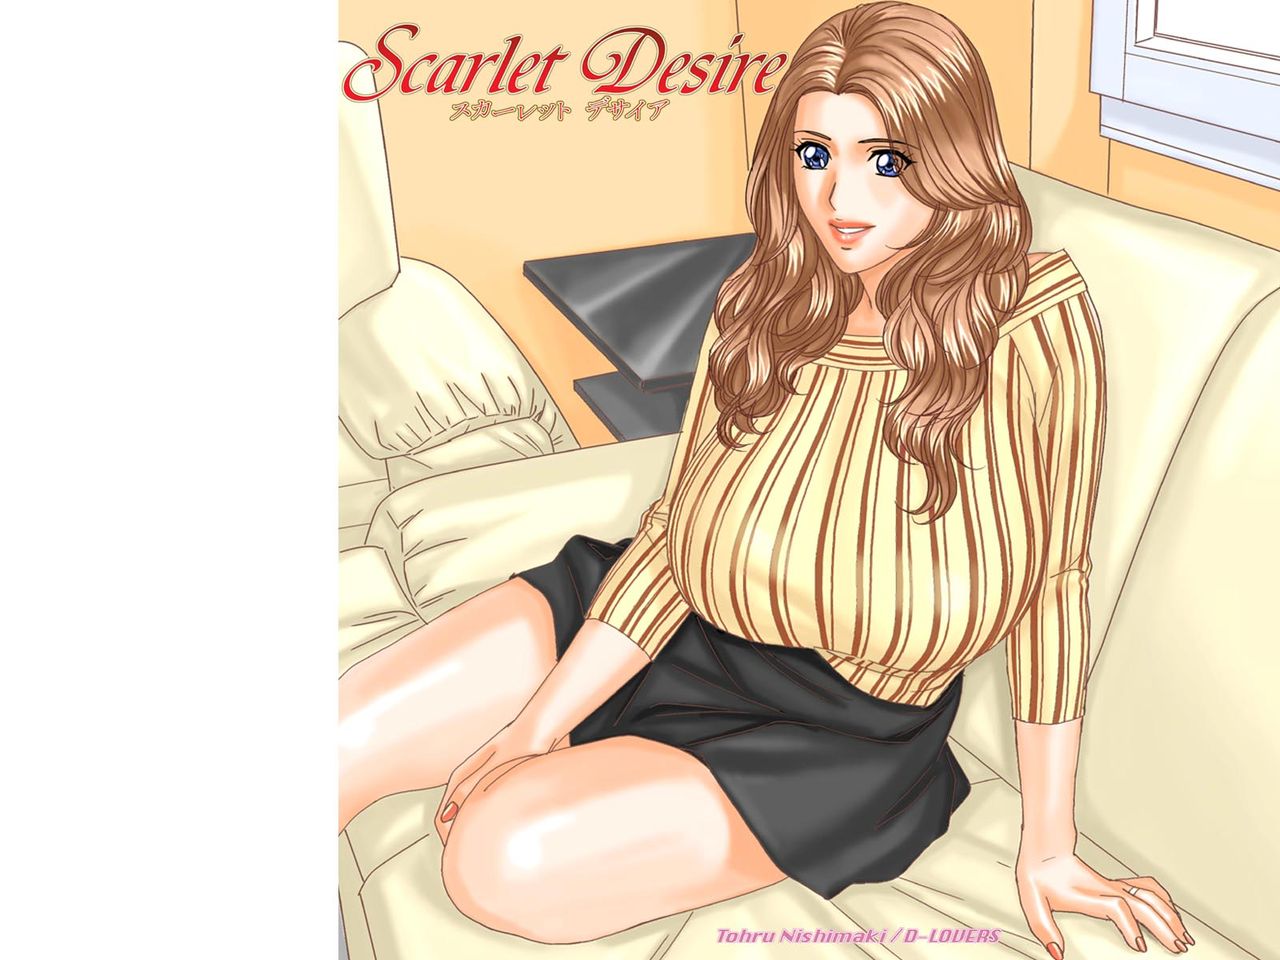 Scarlet Desire 2 numero d'image 115